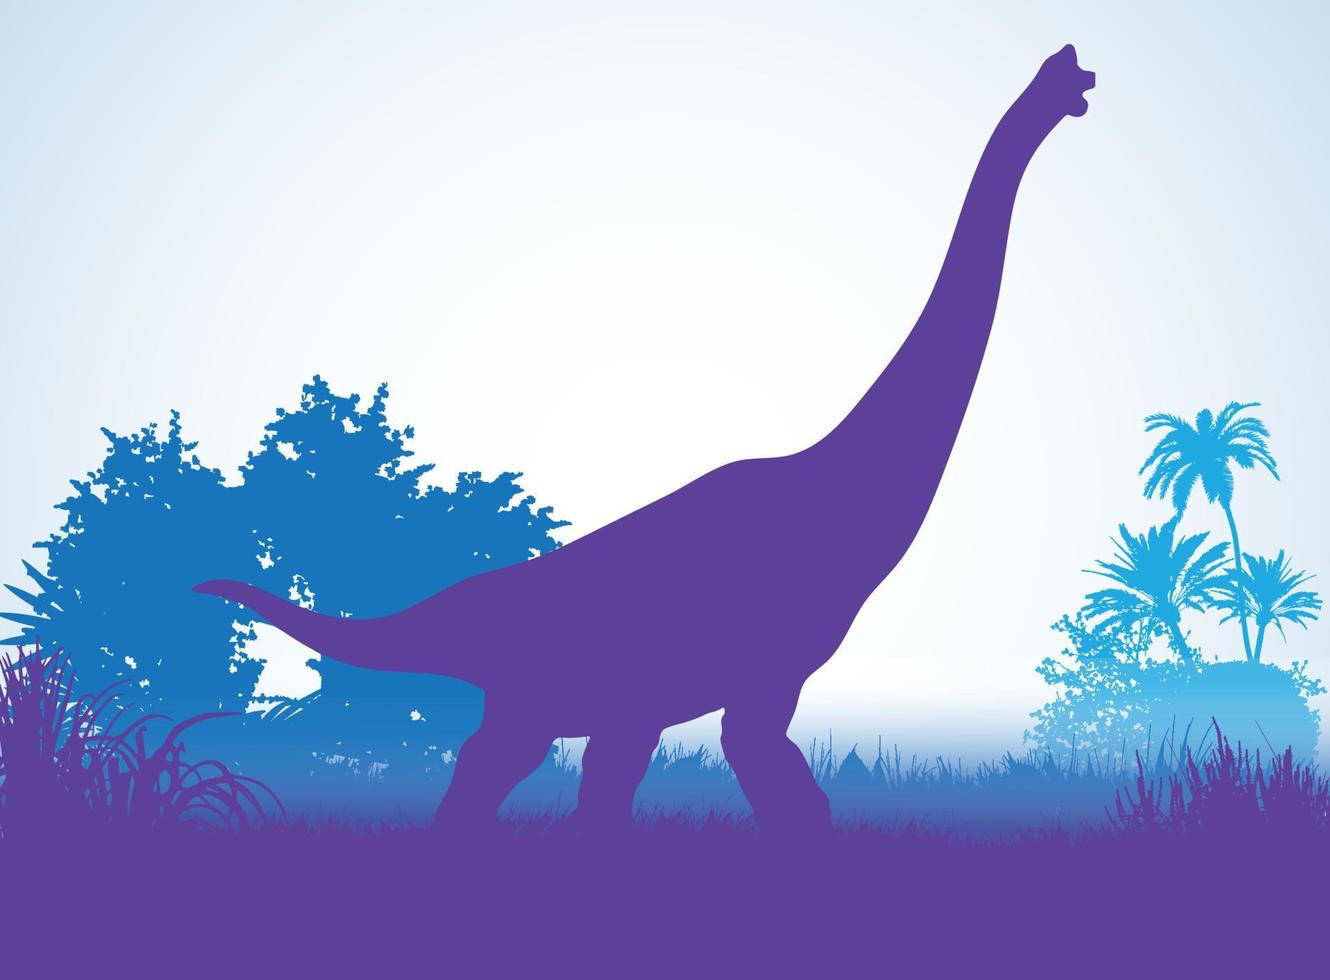 Brachiosaurus, Dinosaurier-Silhouetten in prähistorischer Umgebung überlappende Schichten dekorative Hintergrundfahne abstrakte Vektorillustration vektor